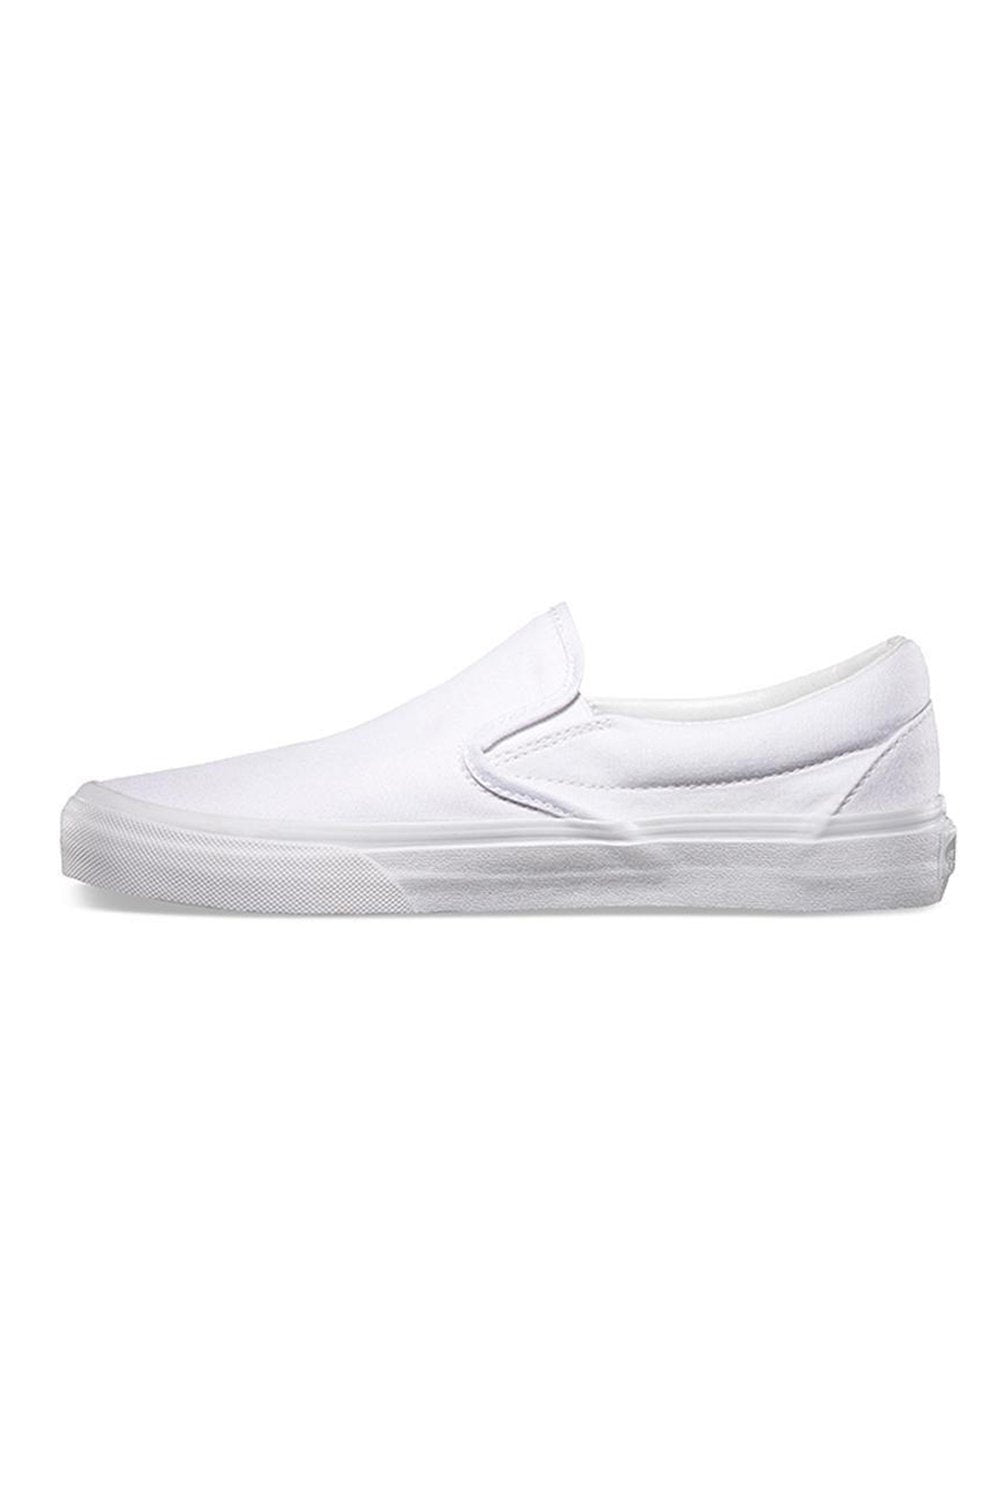 Vans Classic Slip On (CSO) True White Shoe